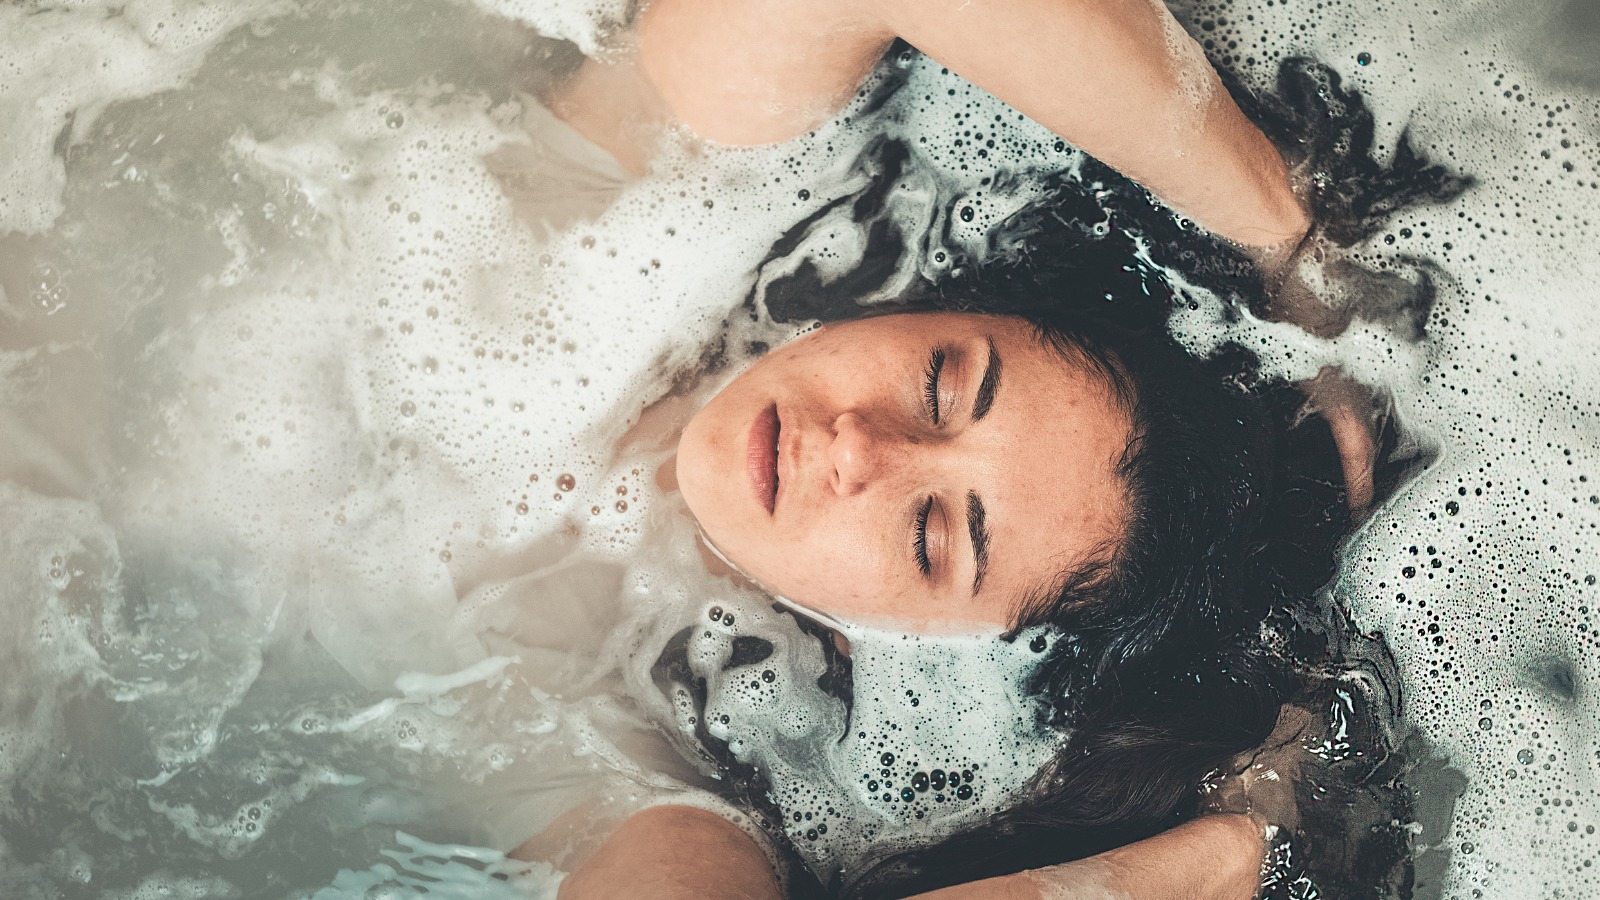 Photo “Woman in Bath Tub” by Craig Adderley